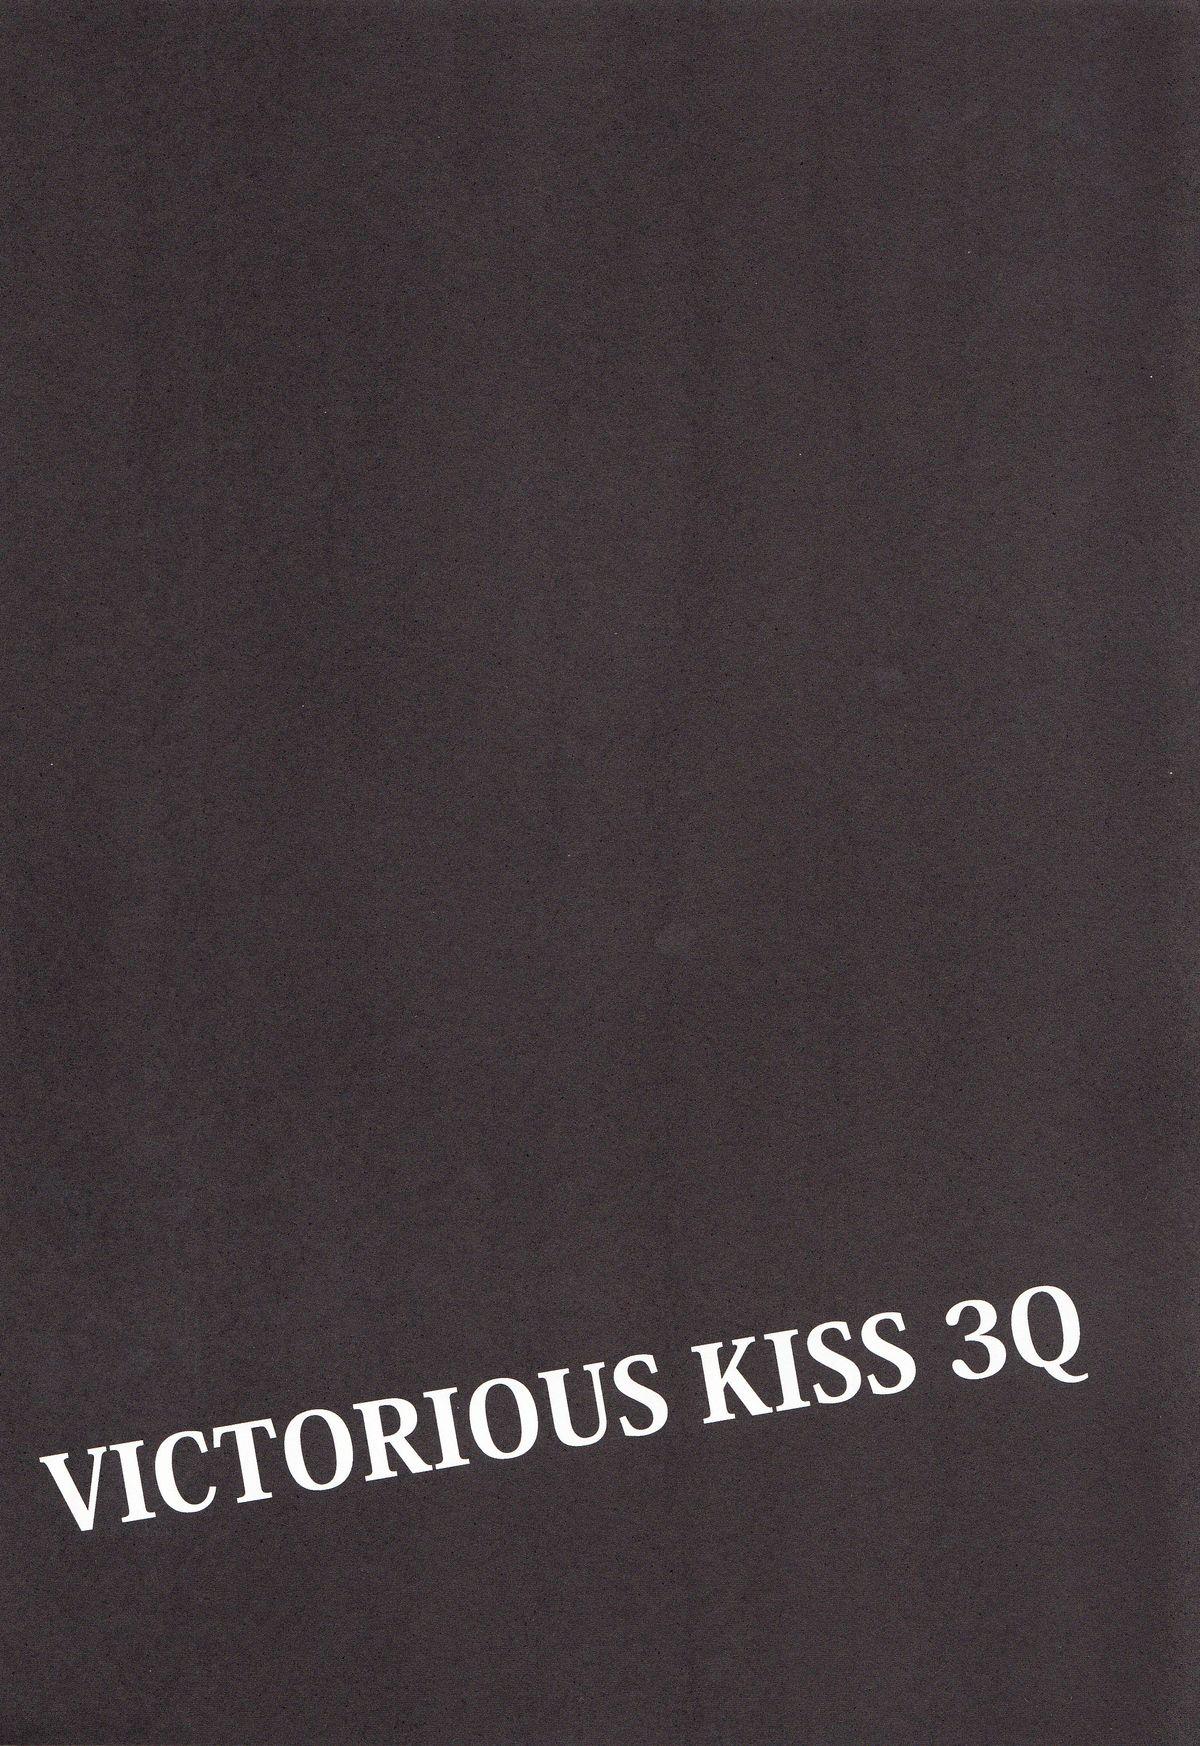 VICTORIOUS KISS 3Q 50